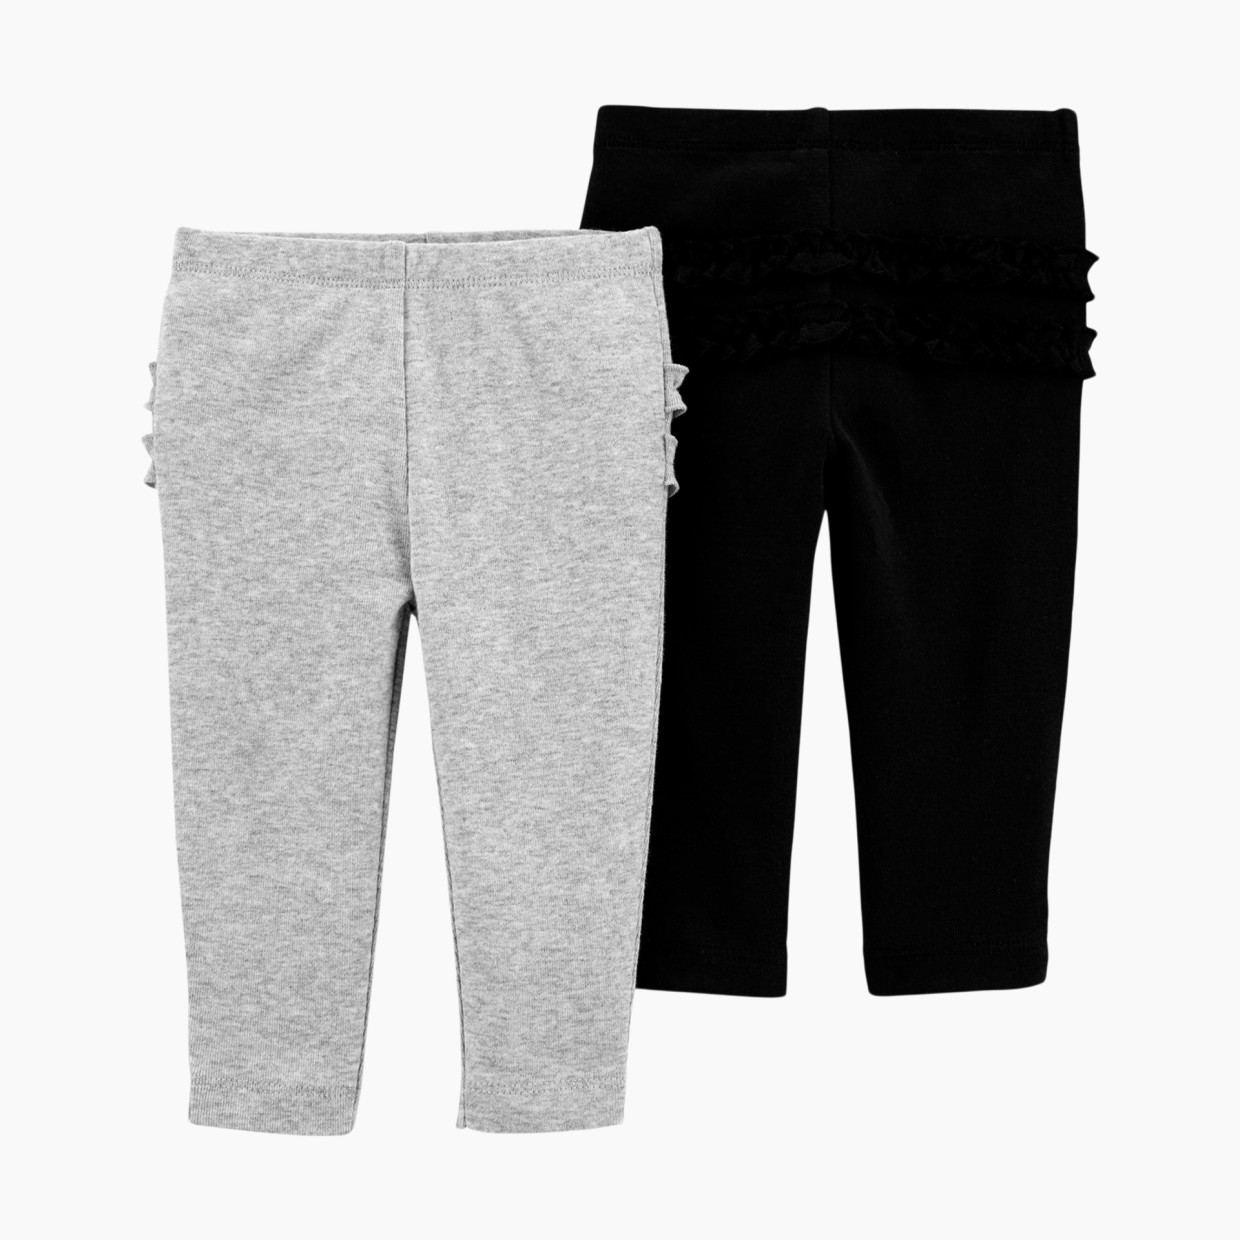 Carter's Cotton Pants (2 Pack) - Black/Grey, 6 M.